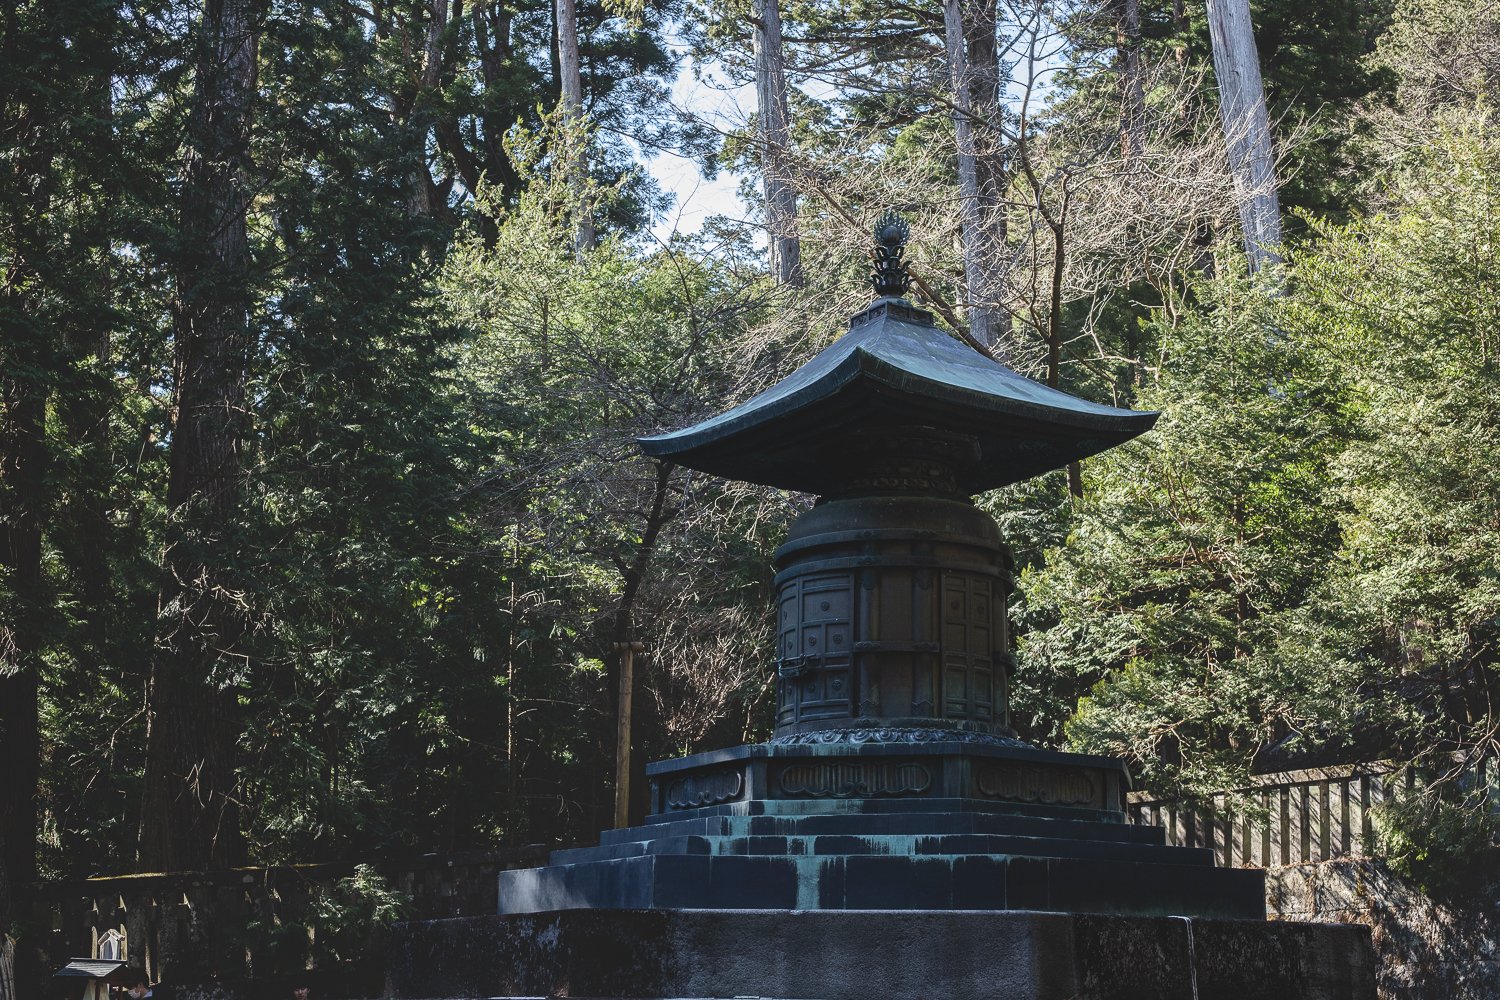 Mausolée du Shogun à Nikko. On voit l'urne de métal sombre avec la forpet en arrière plan